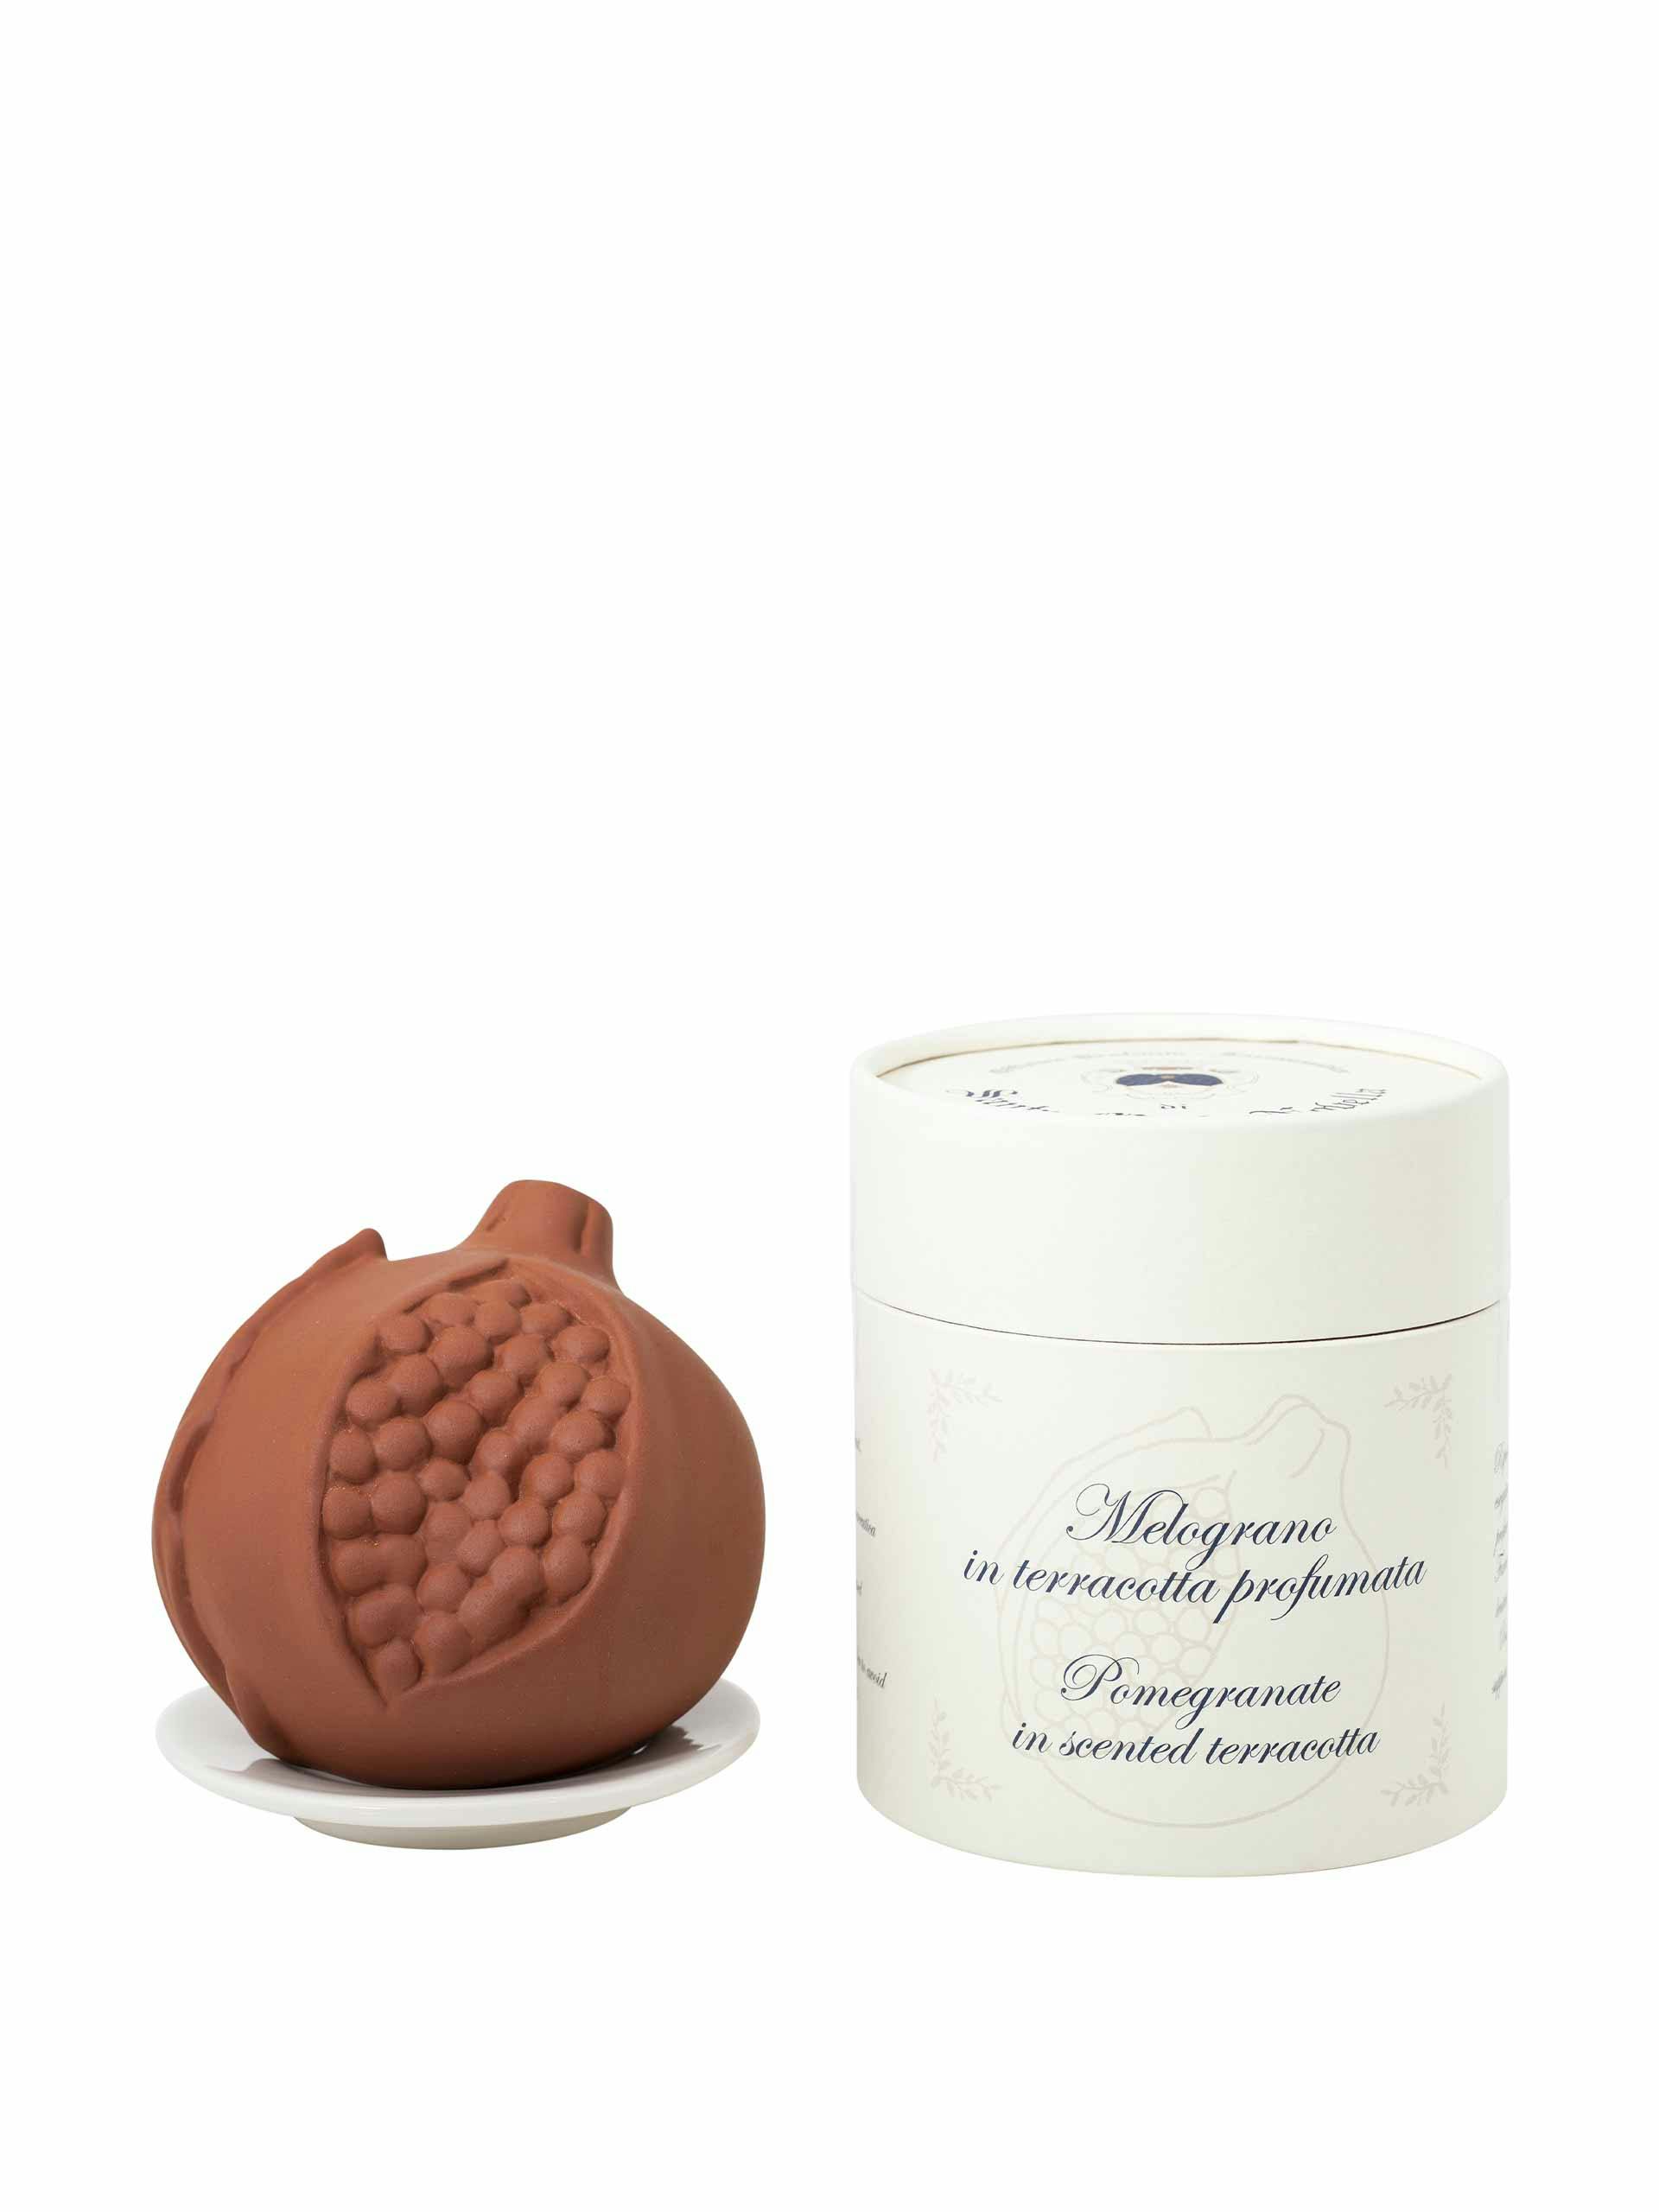 Melograno in scented terracotta